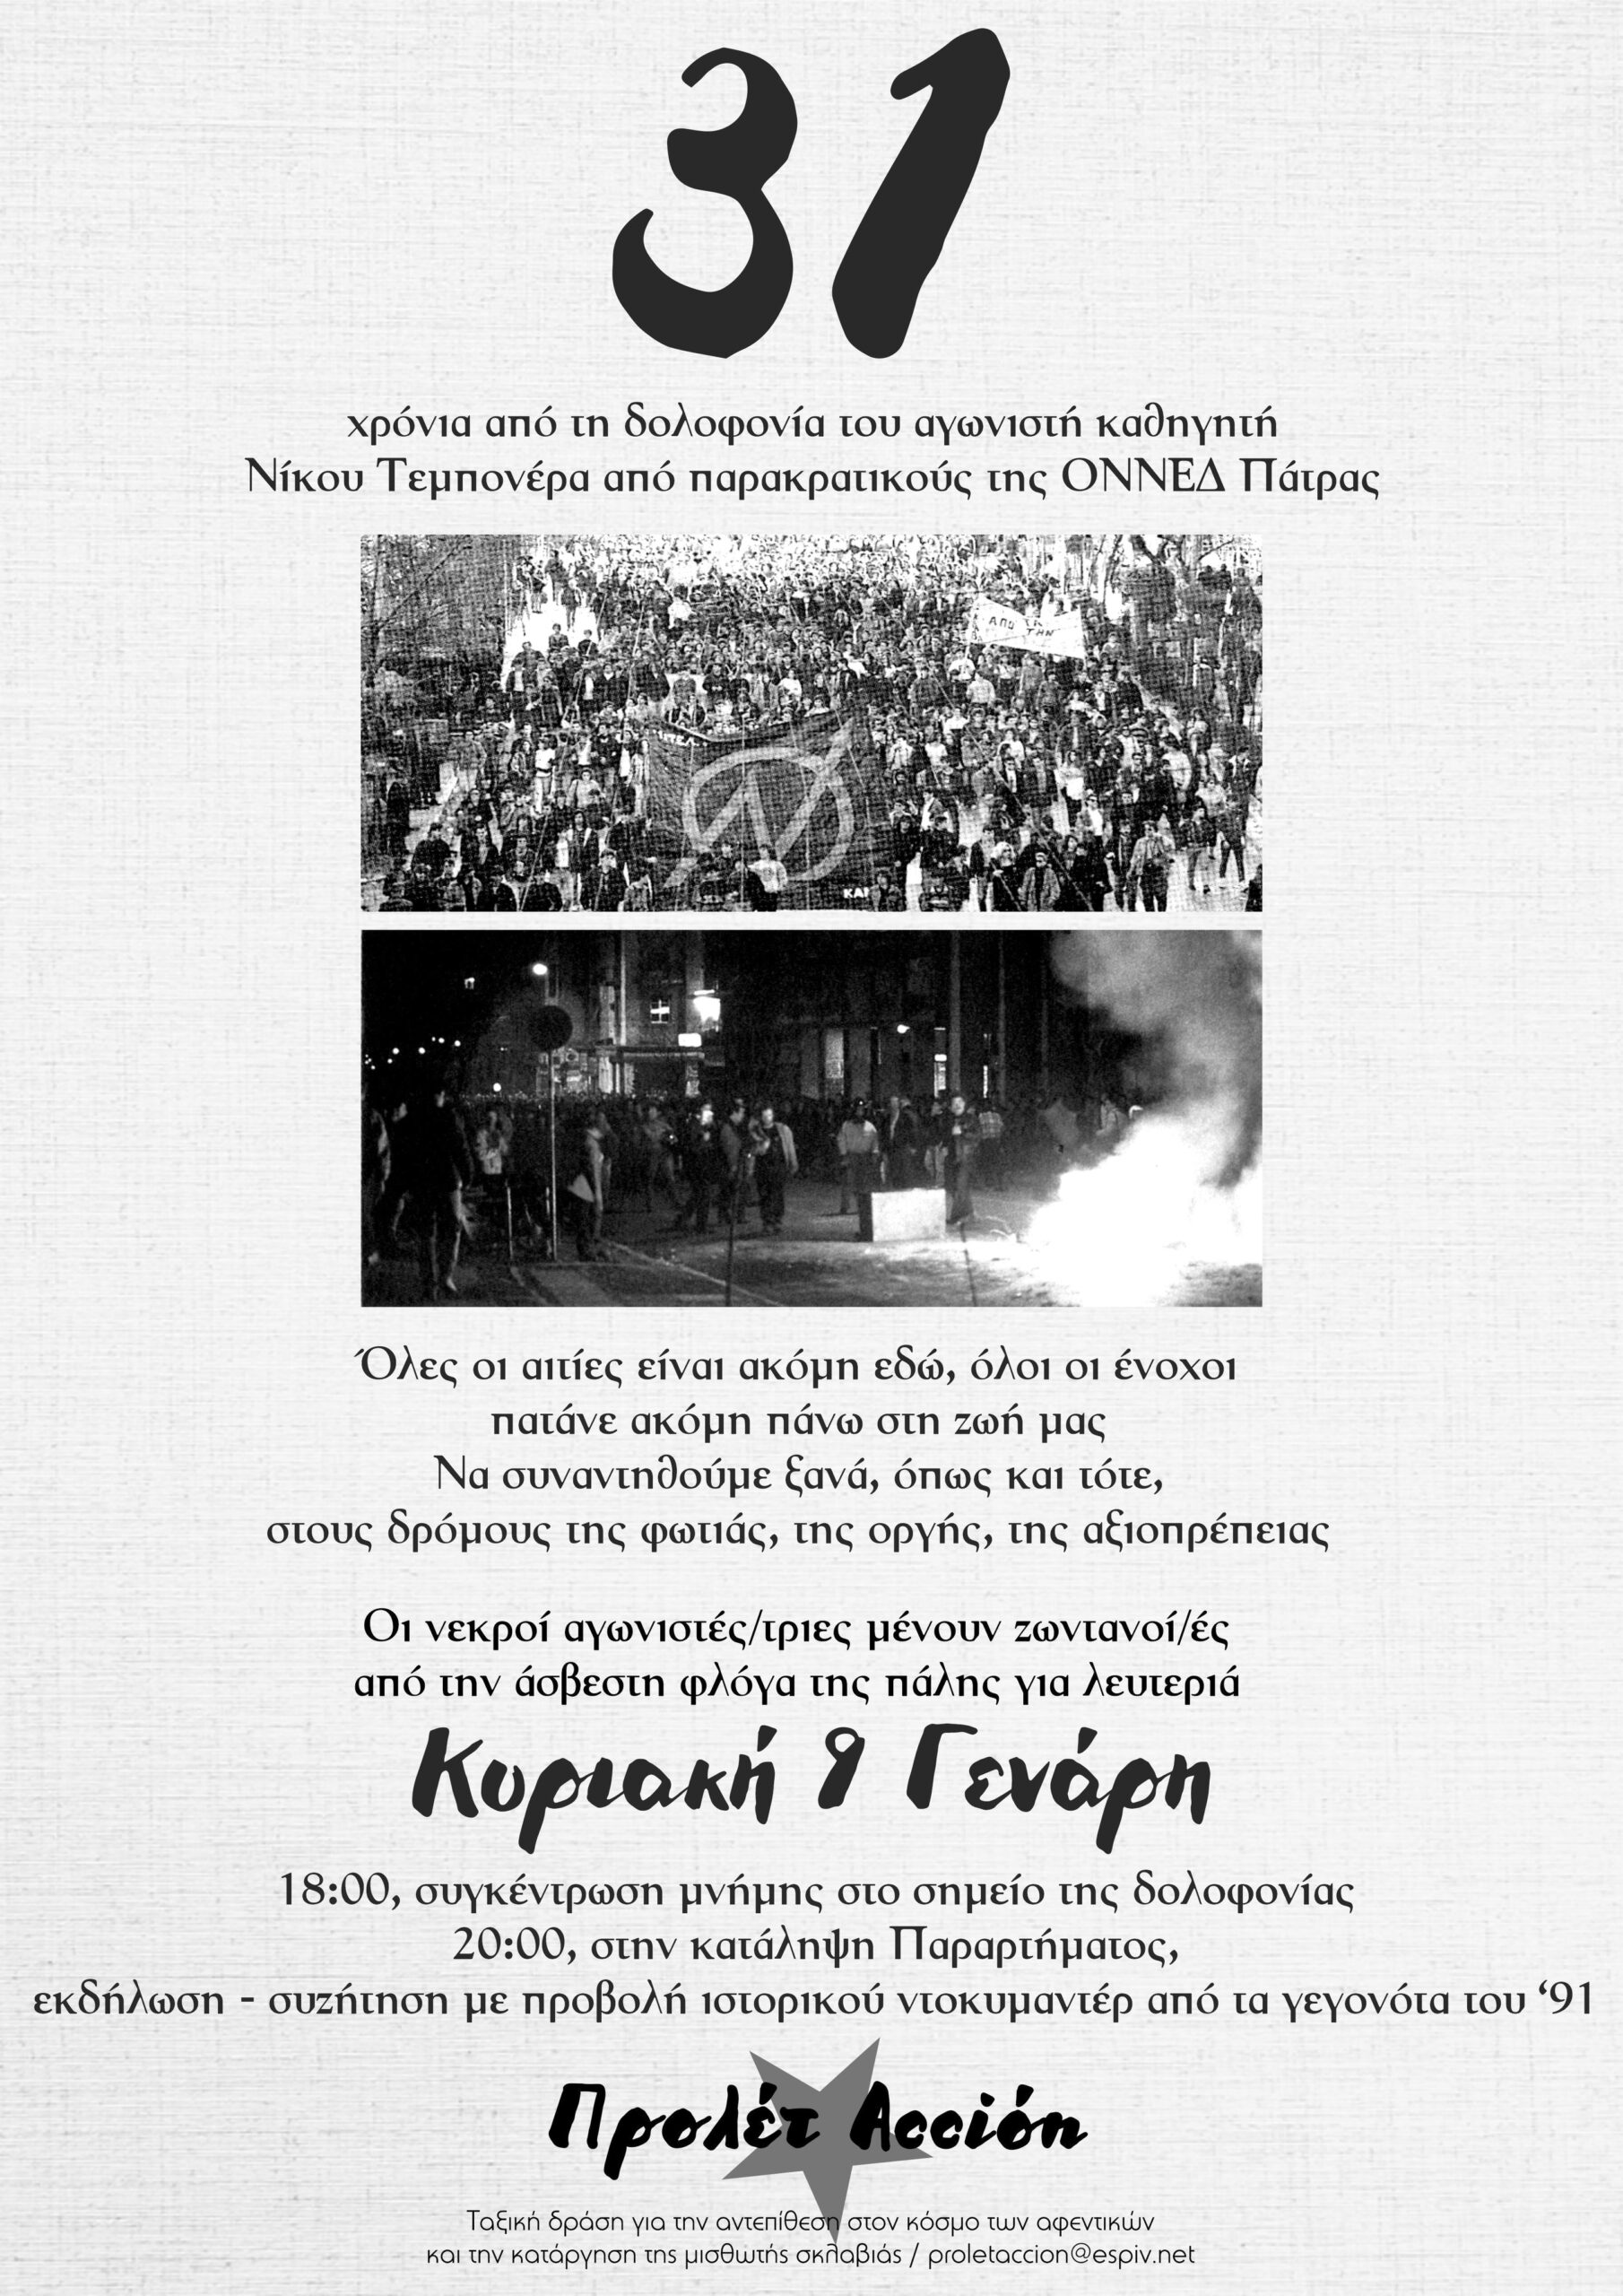 31 χρόνια από τη δολοφονία του Νίκου Τεμπονέρα